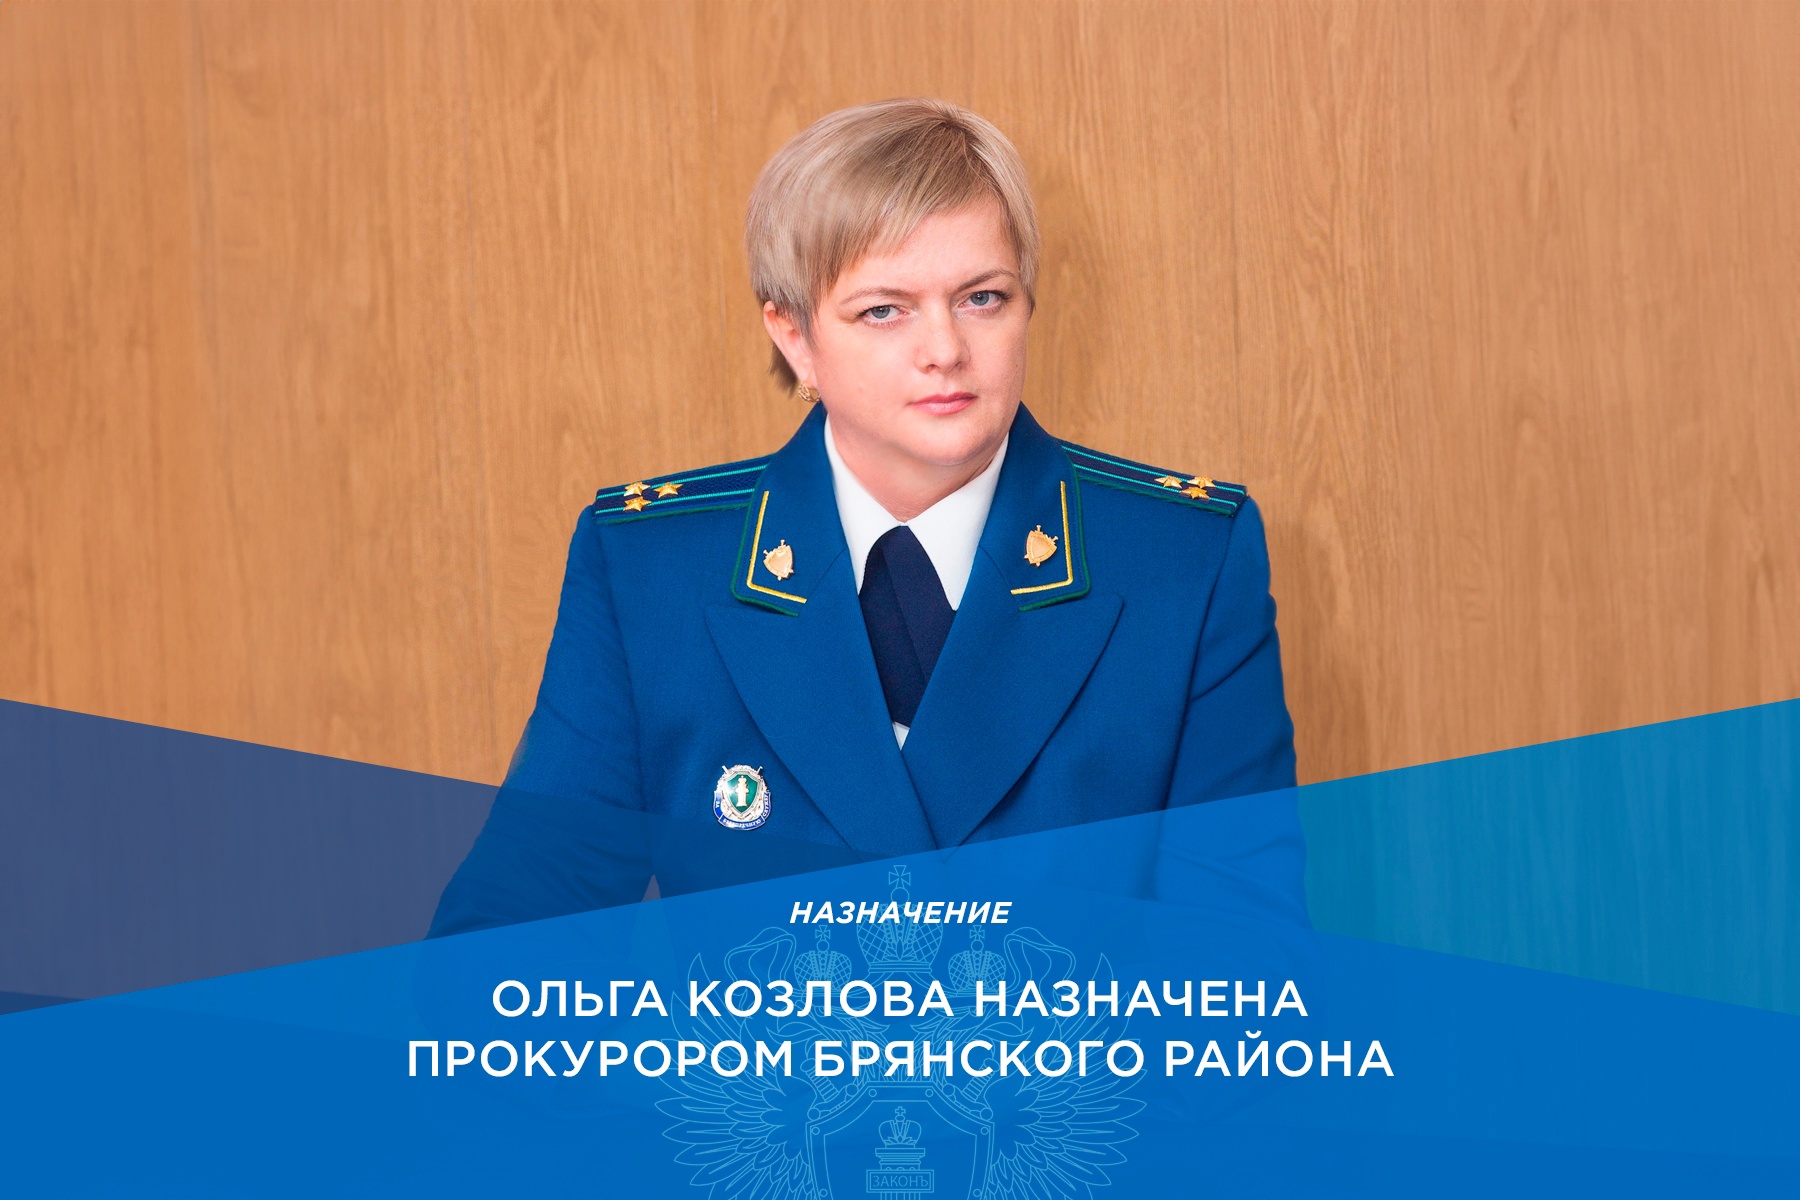 Прокурором Брянского района стала Ольга Козлова